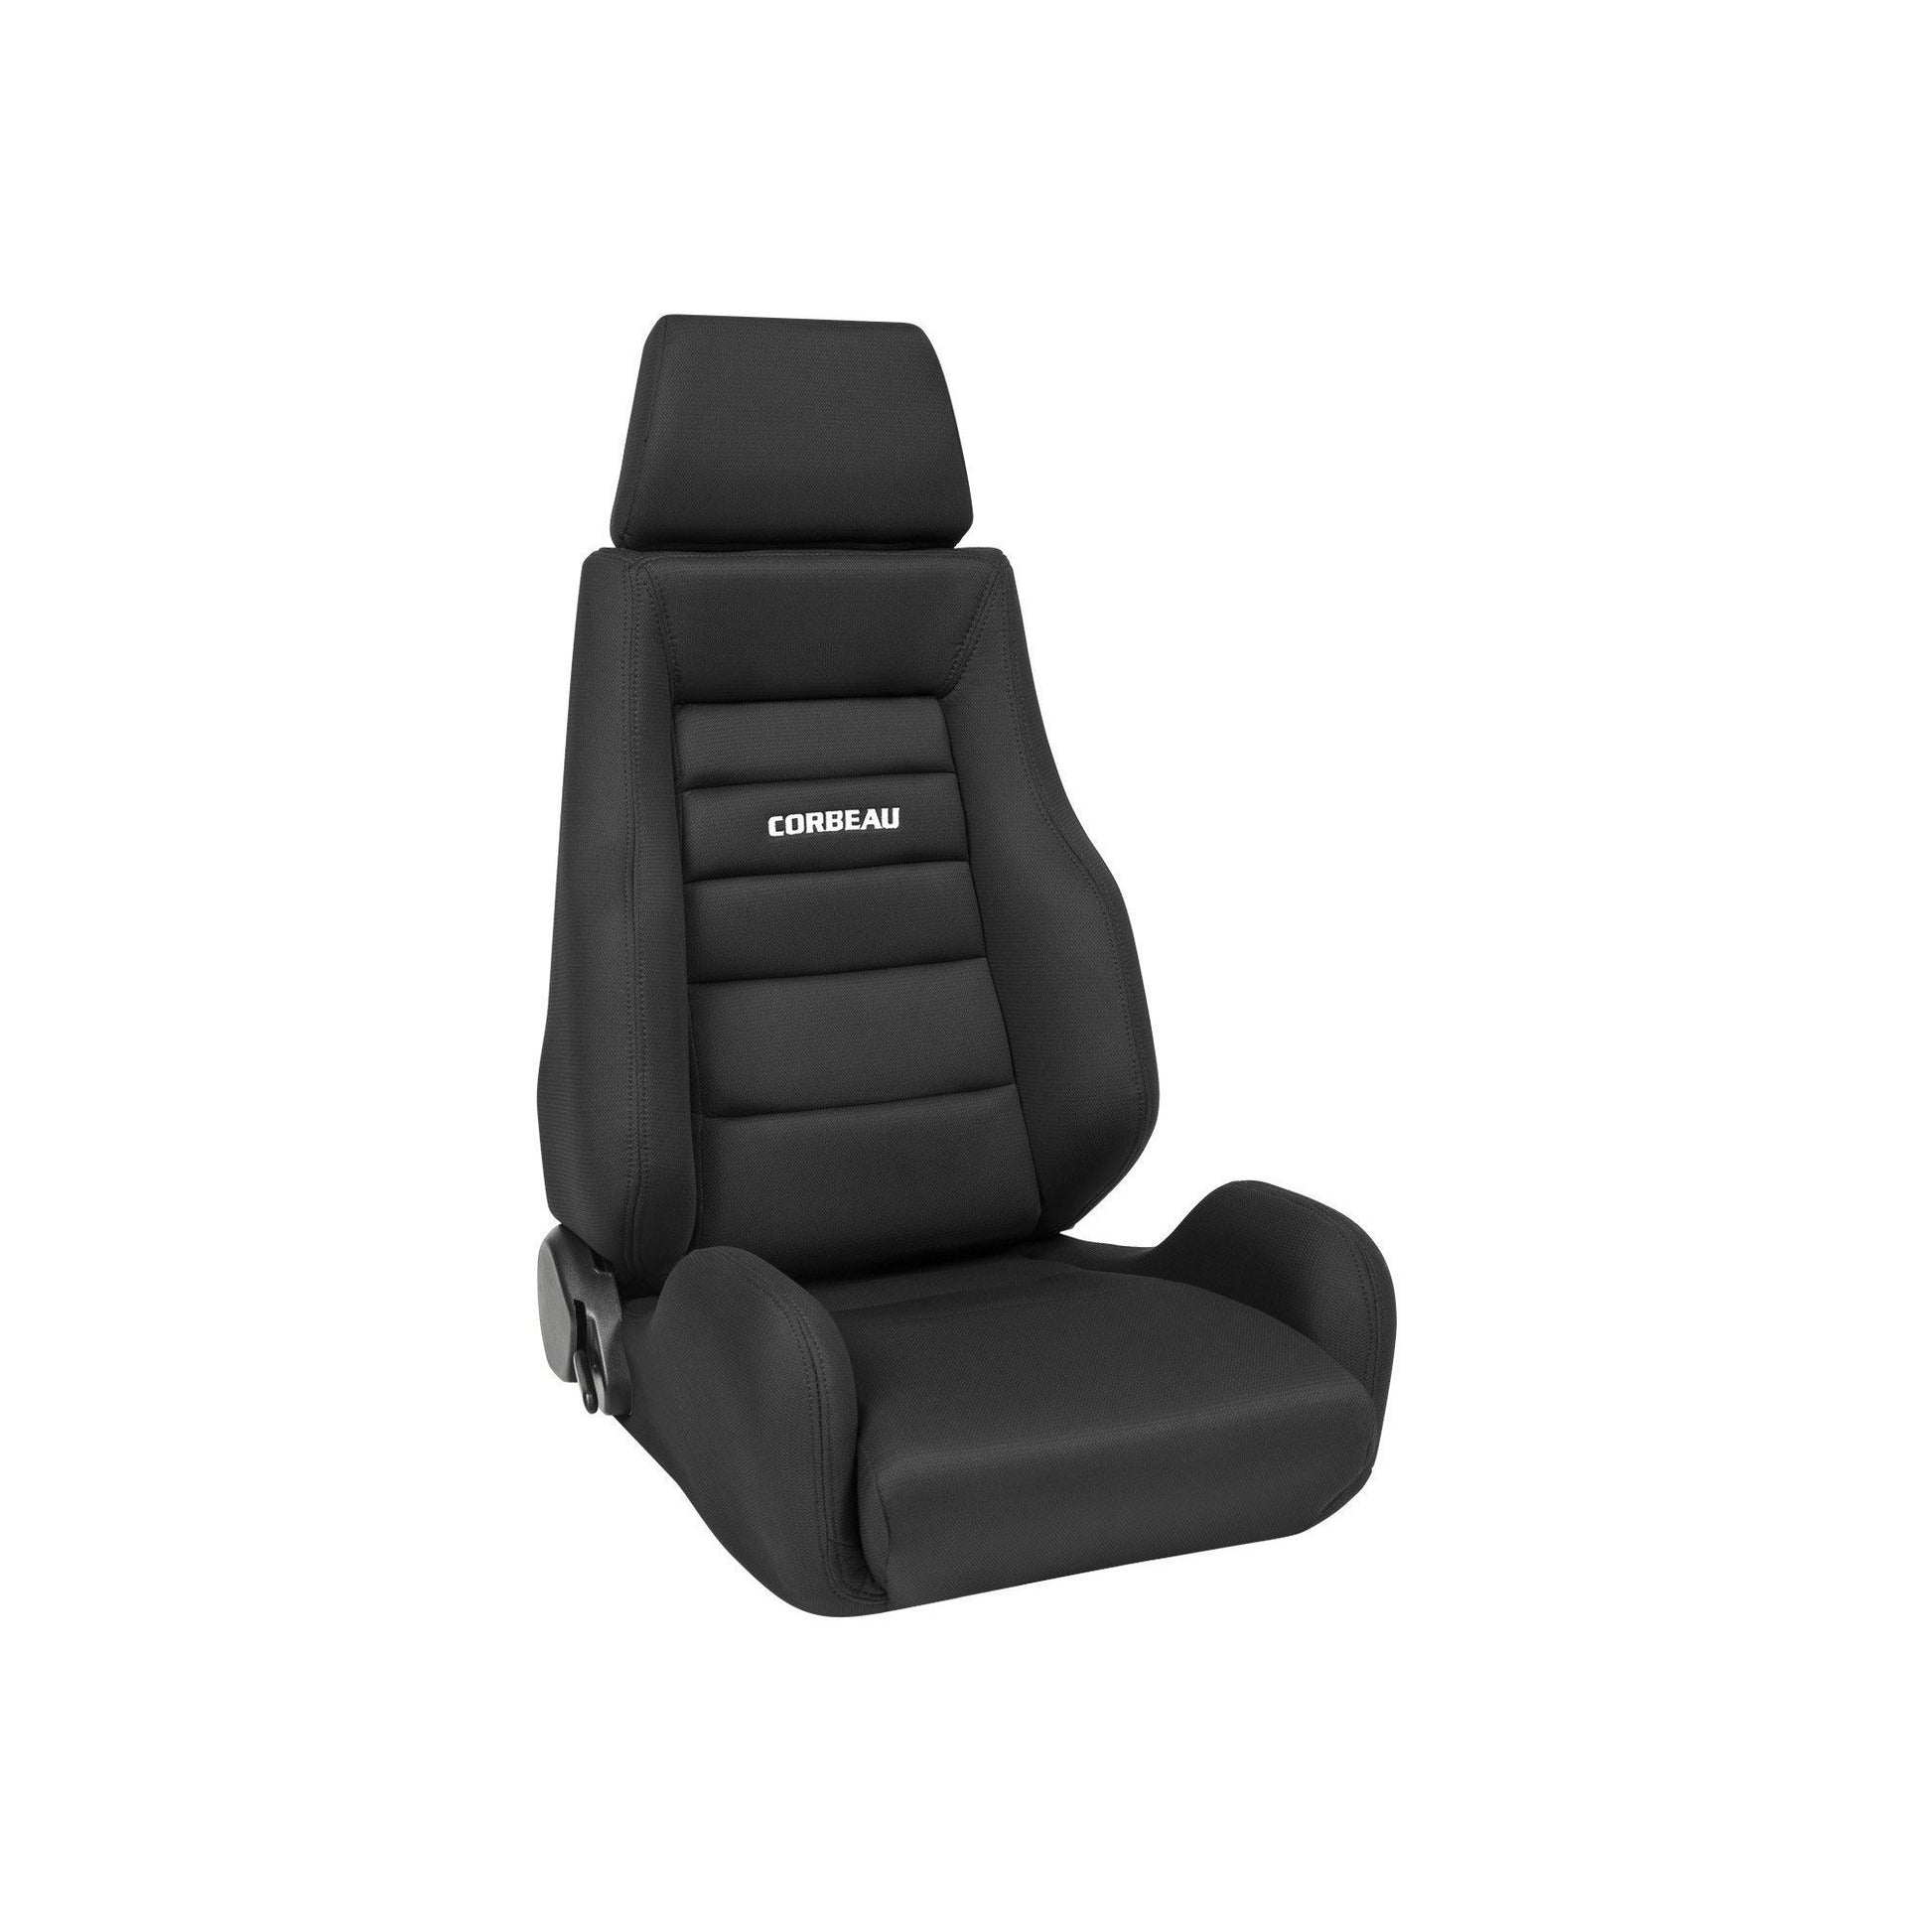 Corbeau GTSII Seat Black Leather - Universal-CBU-L20301PR-CBU-L20301PR-Seats-Corbeau-JDMuscle